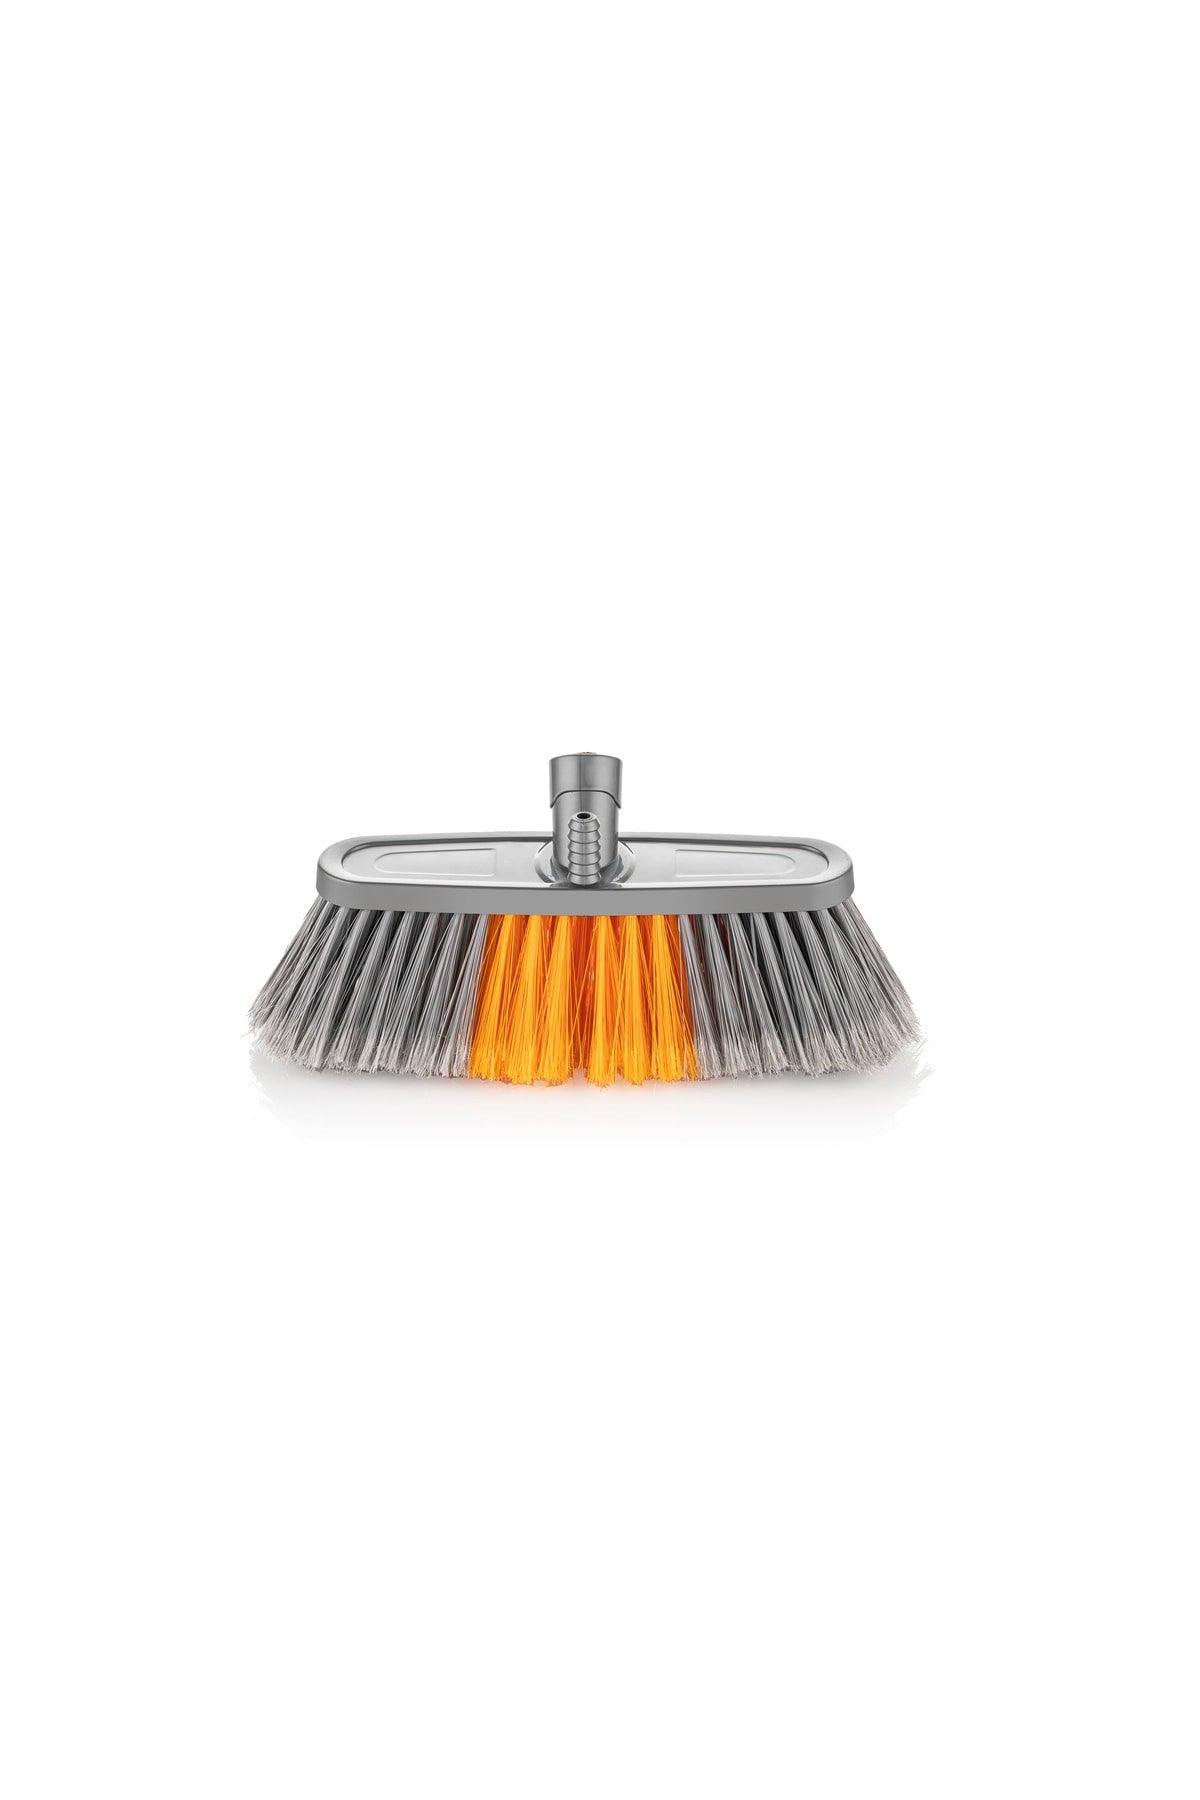 Auto Brush - Orange Floor Brush Vacuum Cleaner 15 Cm. Eh-500 - Swordslife